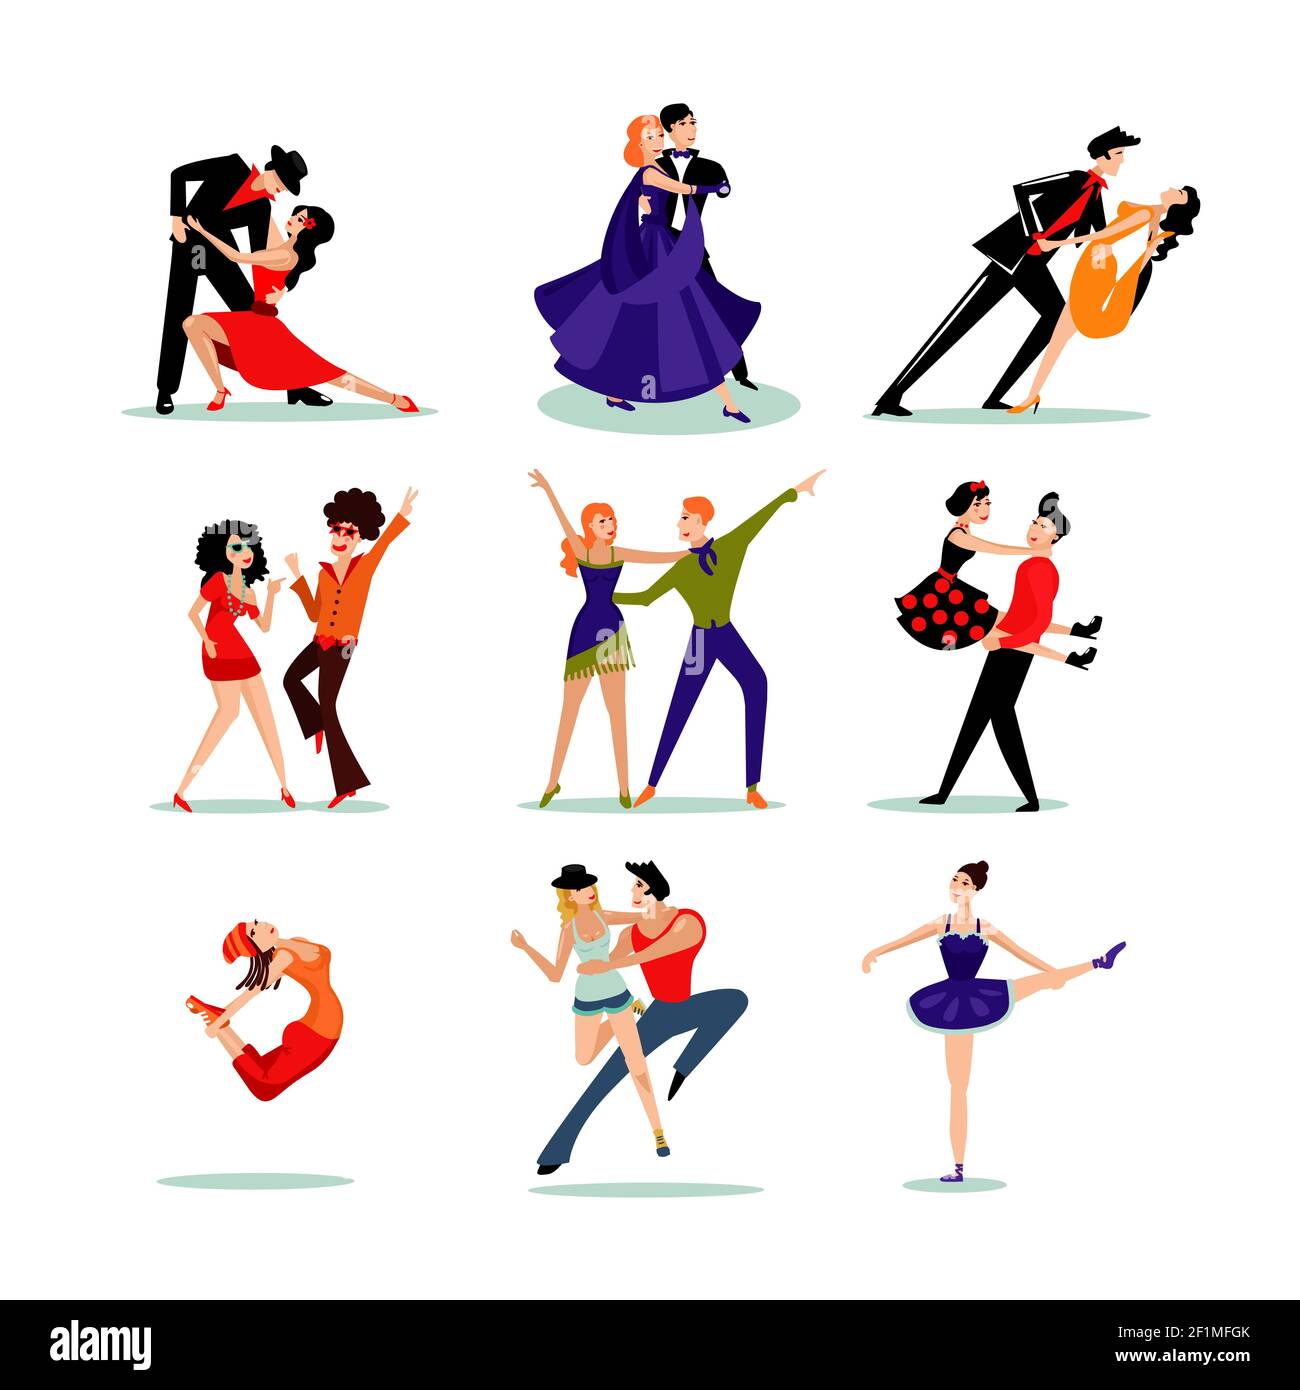 Persone che ballano in diversi abiti e vari stili di danza illustrazione vettoriale isolata Illustrazione Vettoriale